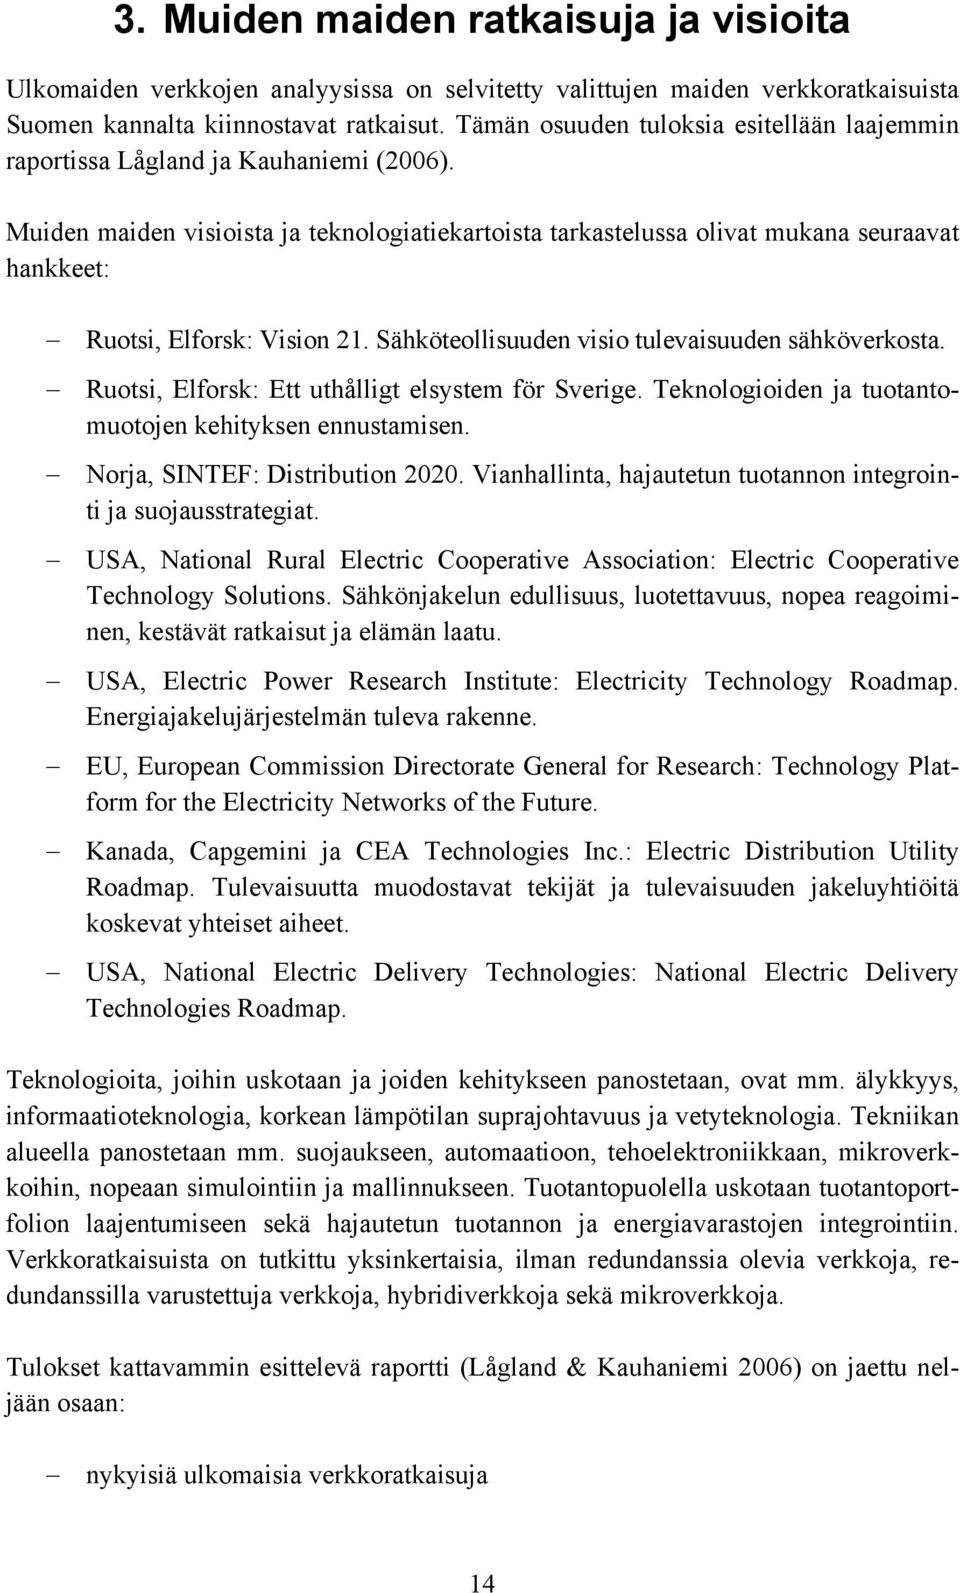 Muiden maiden visioista ja teknologiatiekartoista tarkastelussa olivat mukana seuraavat hankkeet: Ruotsi, Elforsk: Vision 21. Sähköteollisuuden visio tulevaisuuden sähköverkosta.